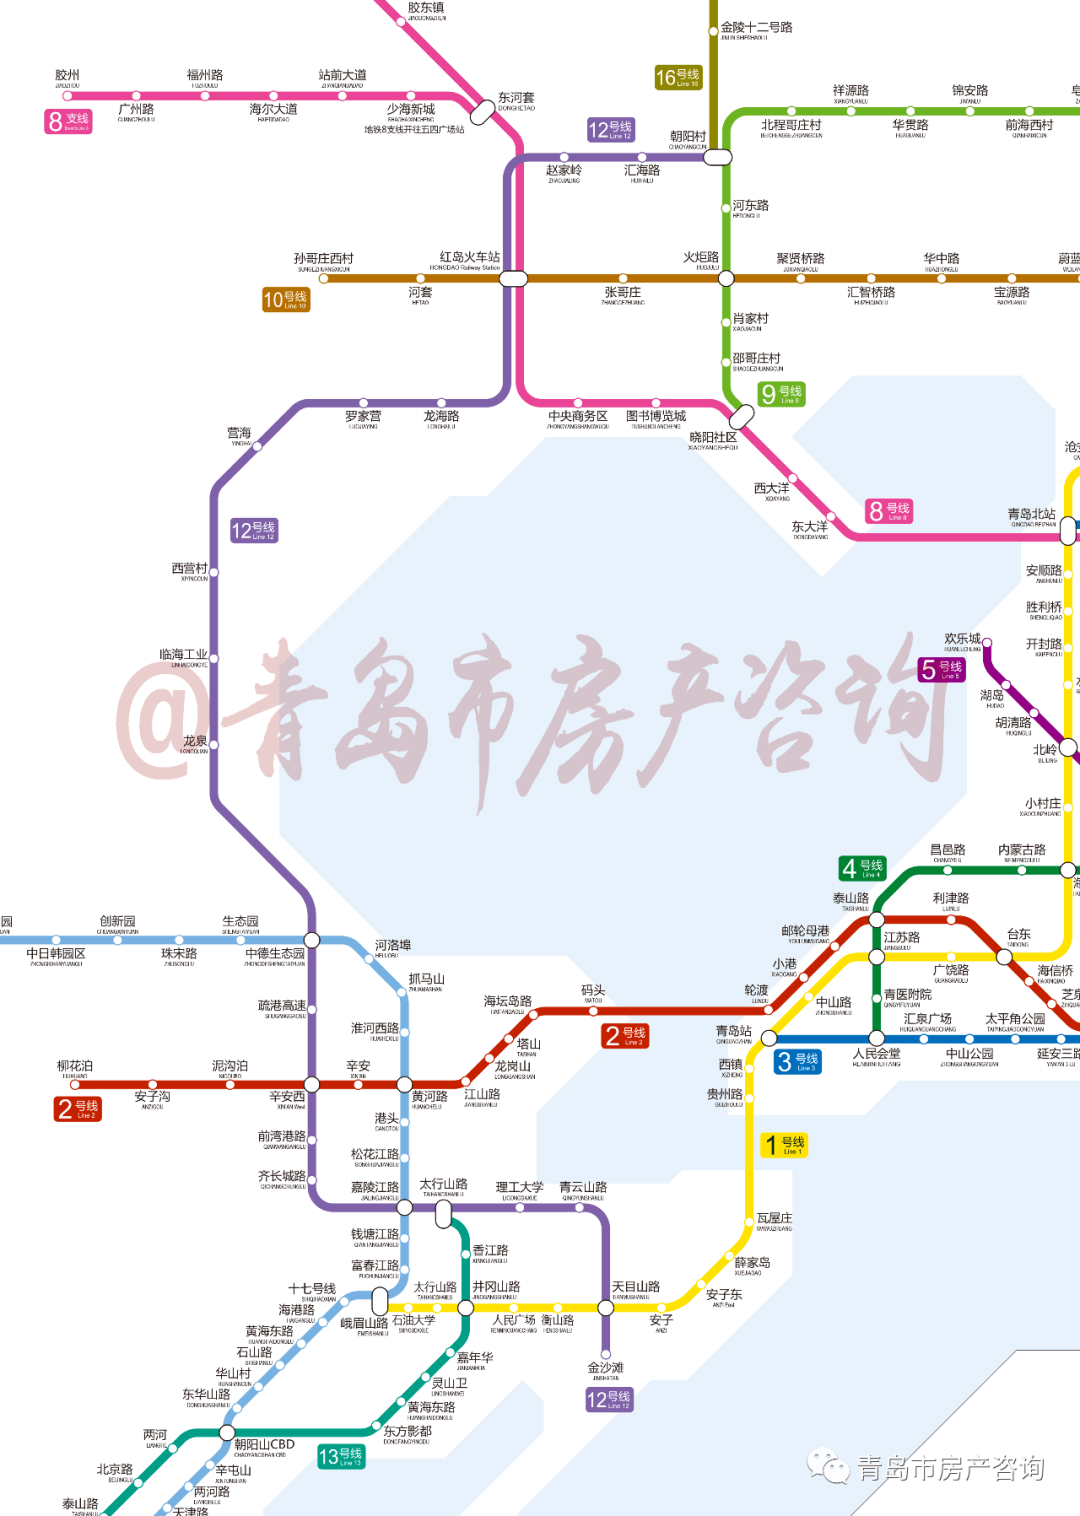 新规划少了12号线01与之前青岛市城市轨道交通三期建设规划(2020-2025